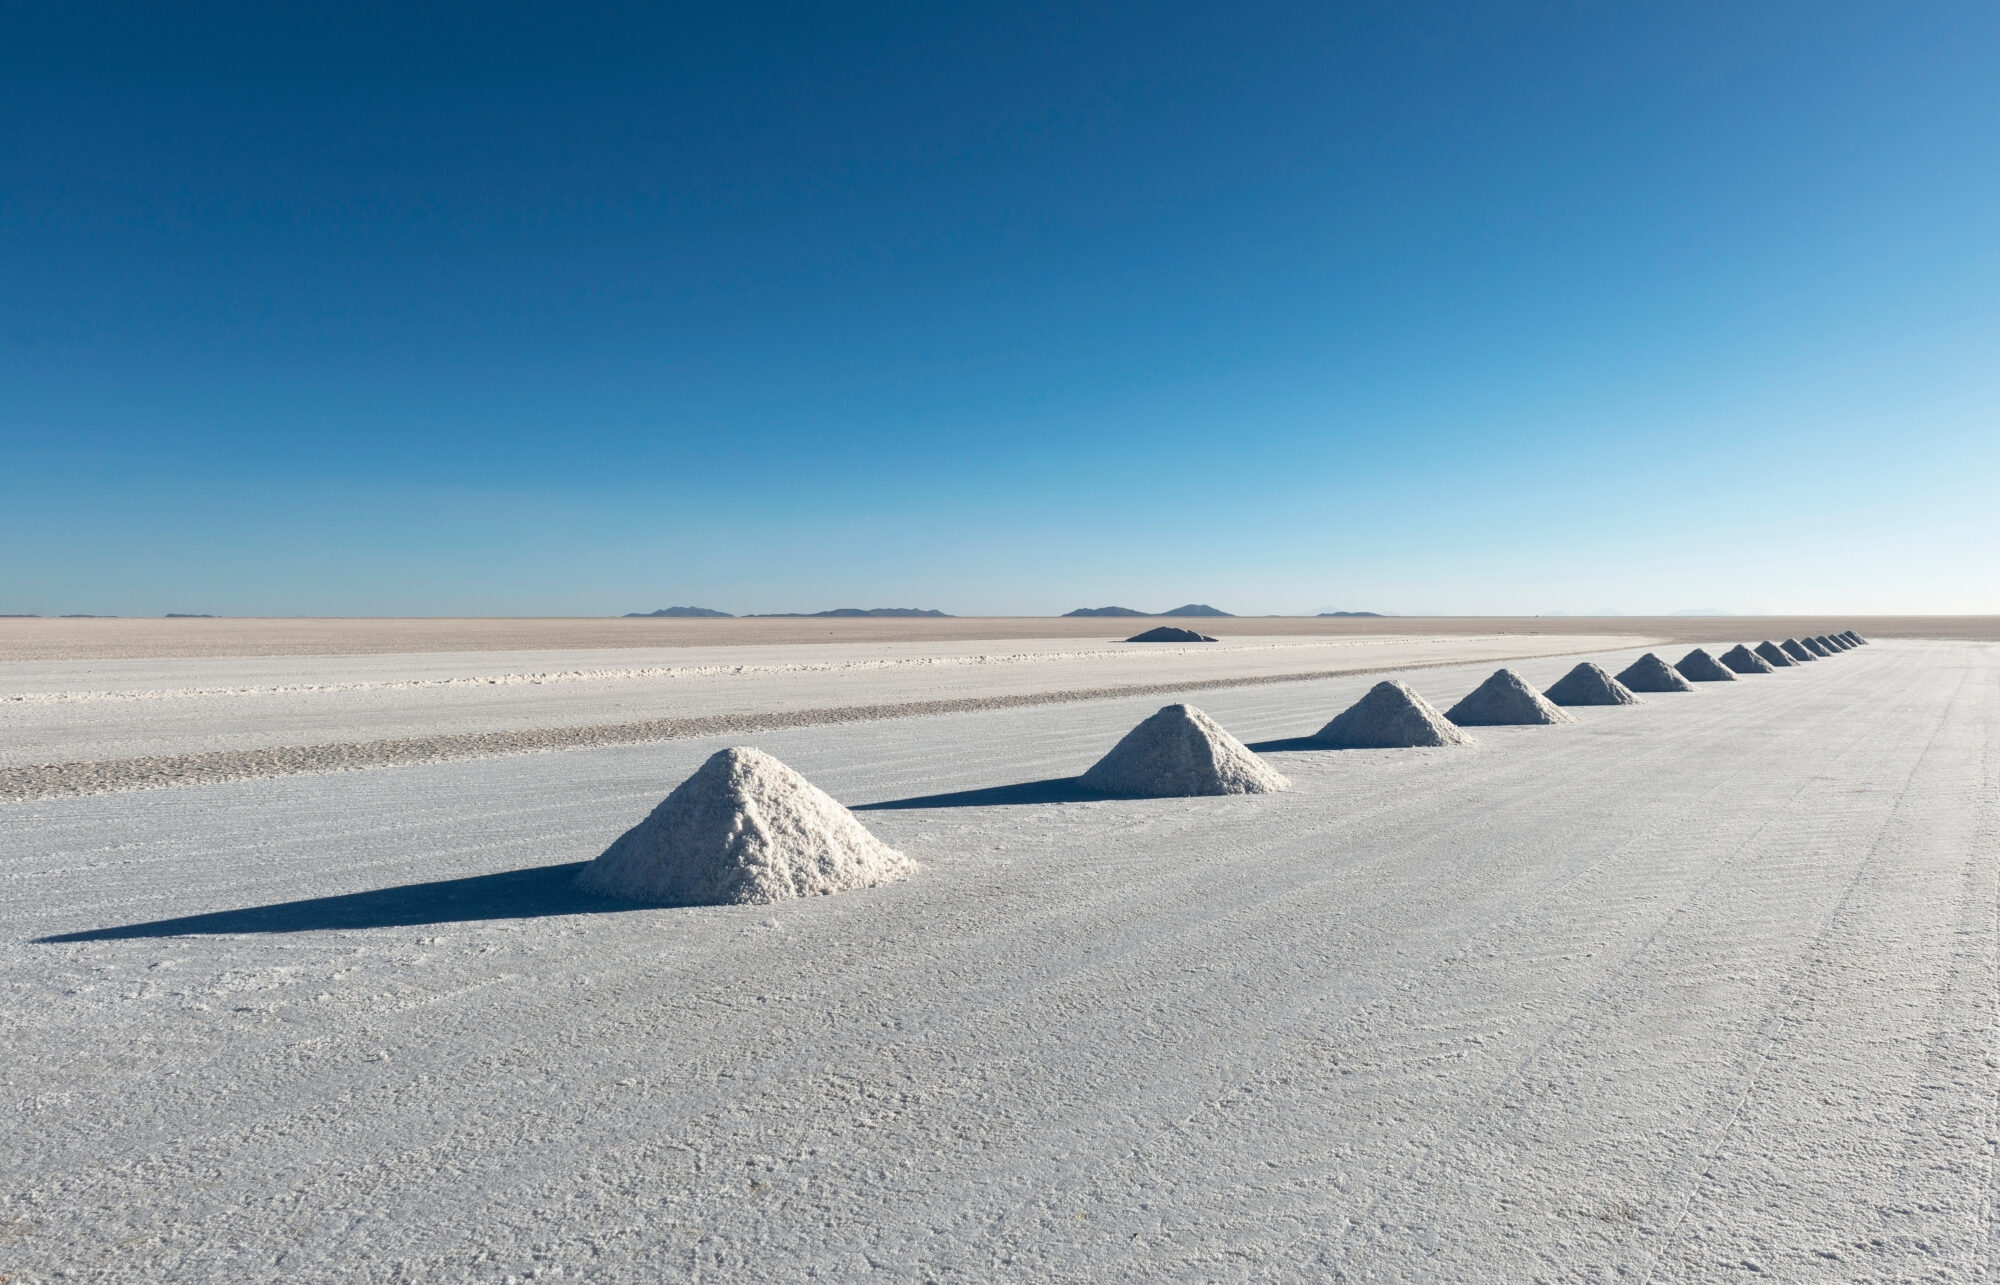 Pirâmides de sal em uma planície de sal